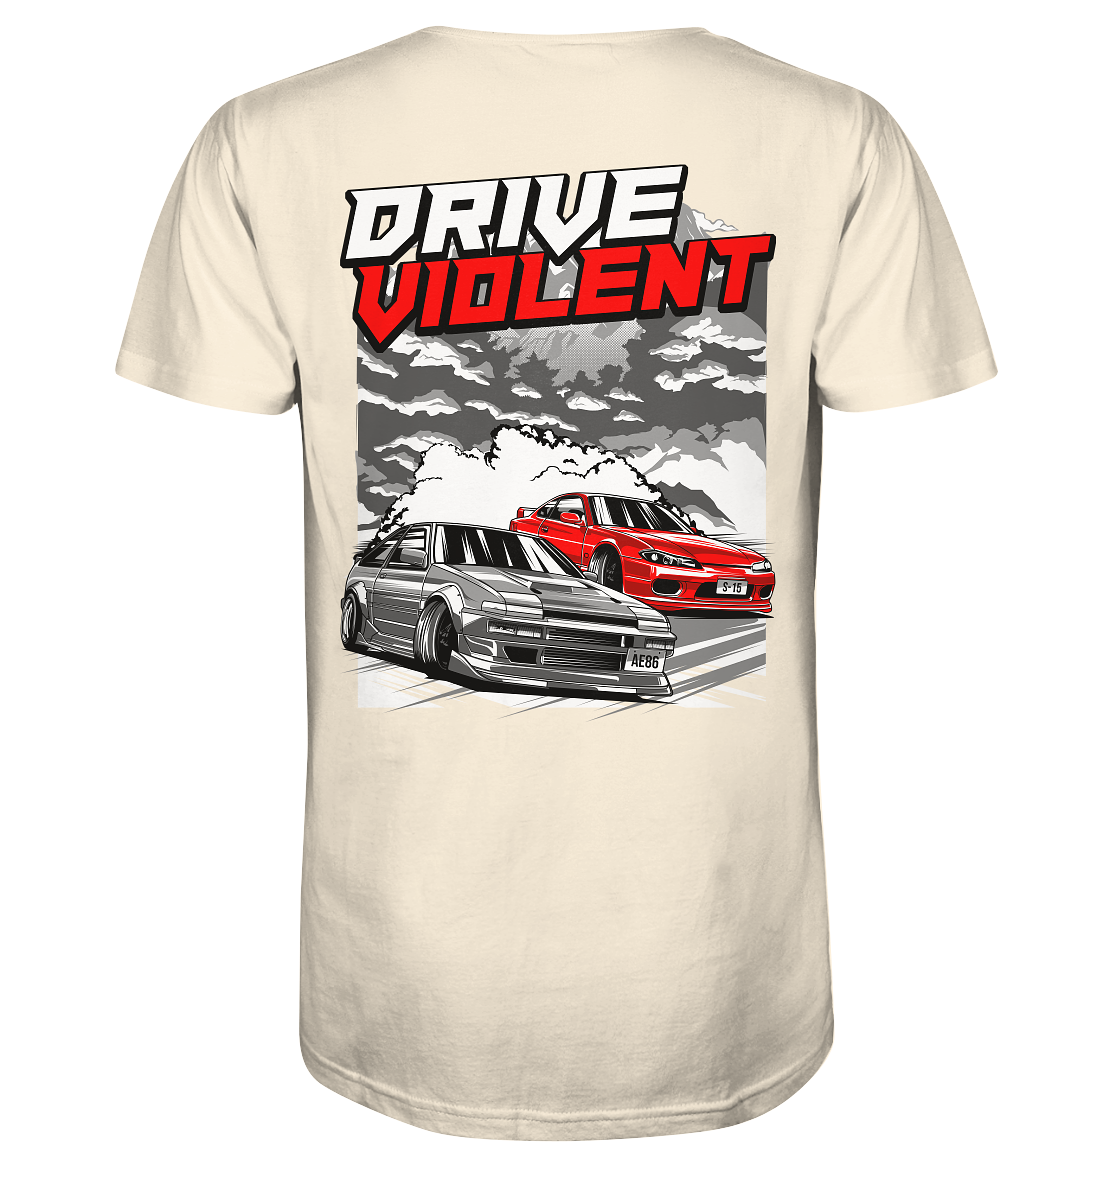 Drift "Violent" - Organic Shirt